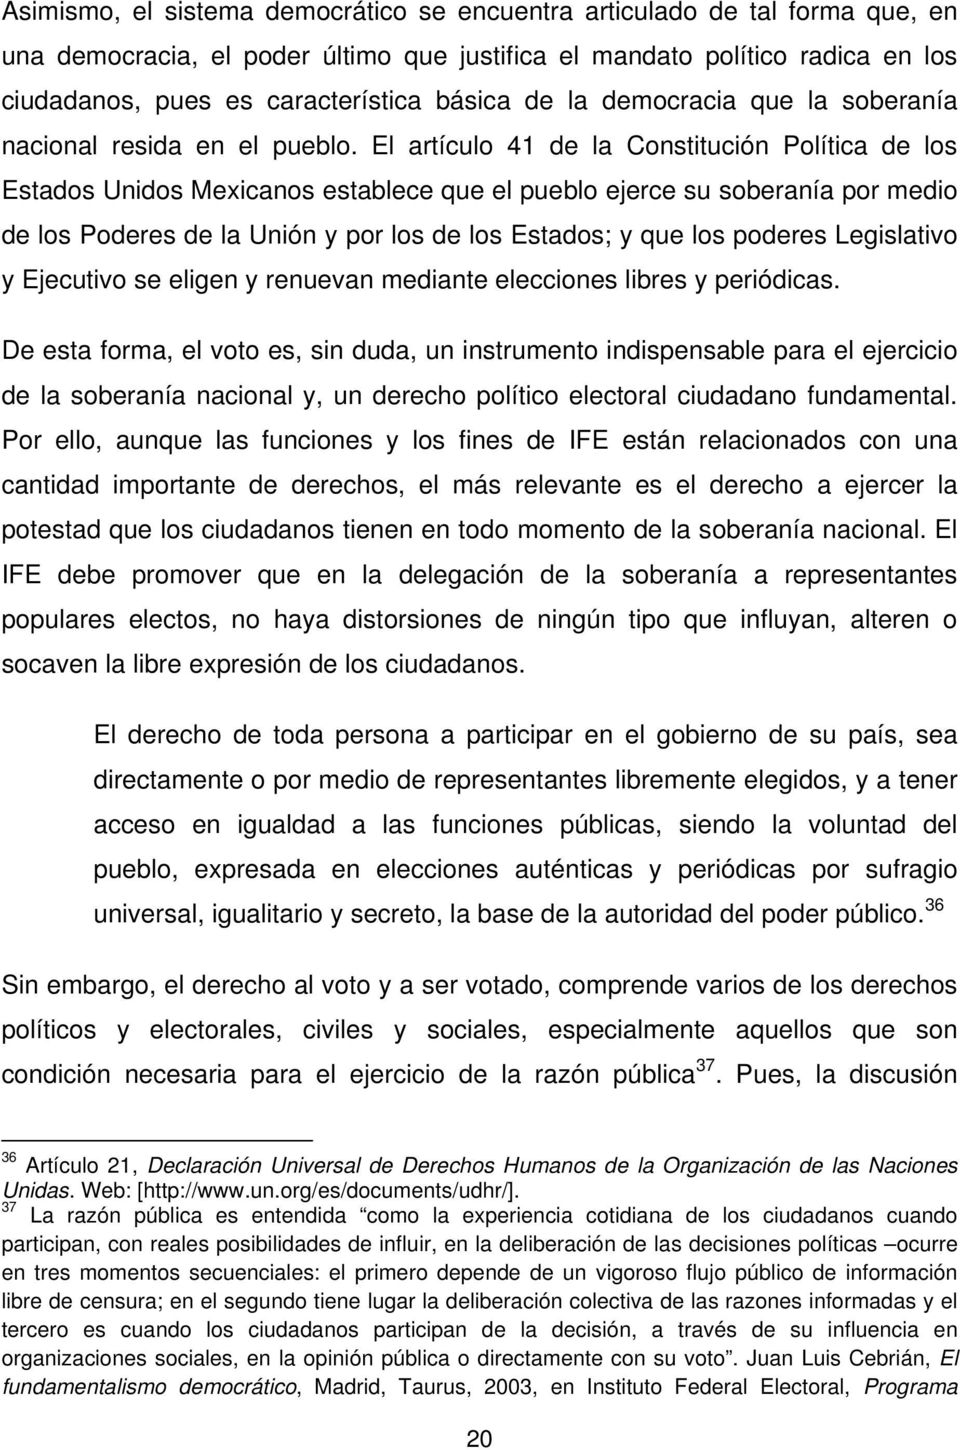 El artículo 41 de la Constitución Política de los Estados Unidos Mexicanos establece que el pueblo ejerce su soberanía por medio de los Poderes de la Unión y por los de los Estados; y que los poderes